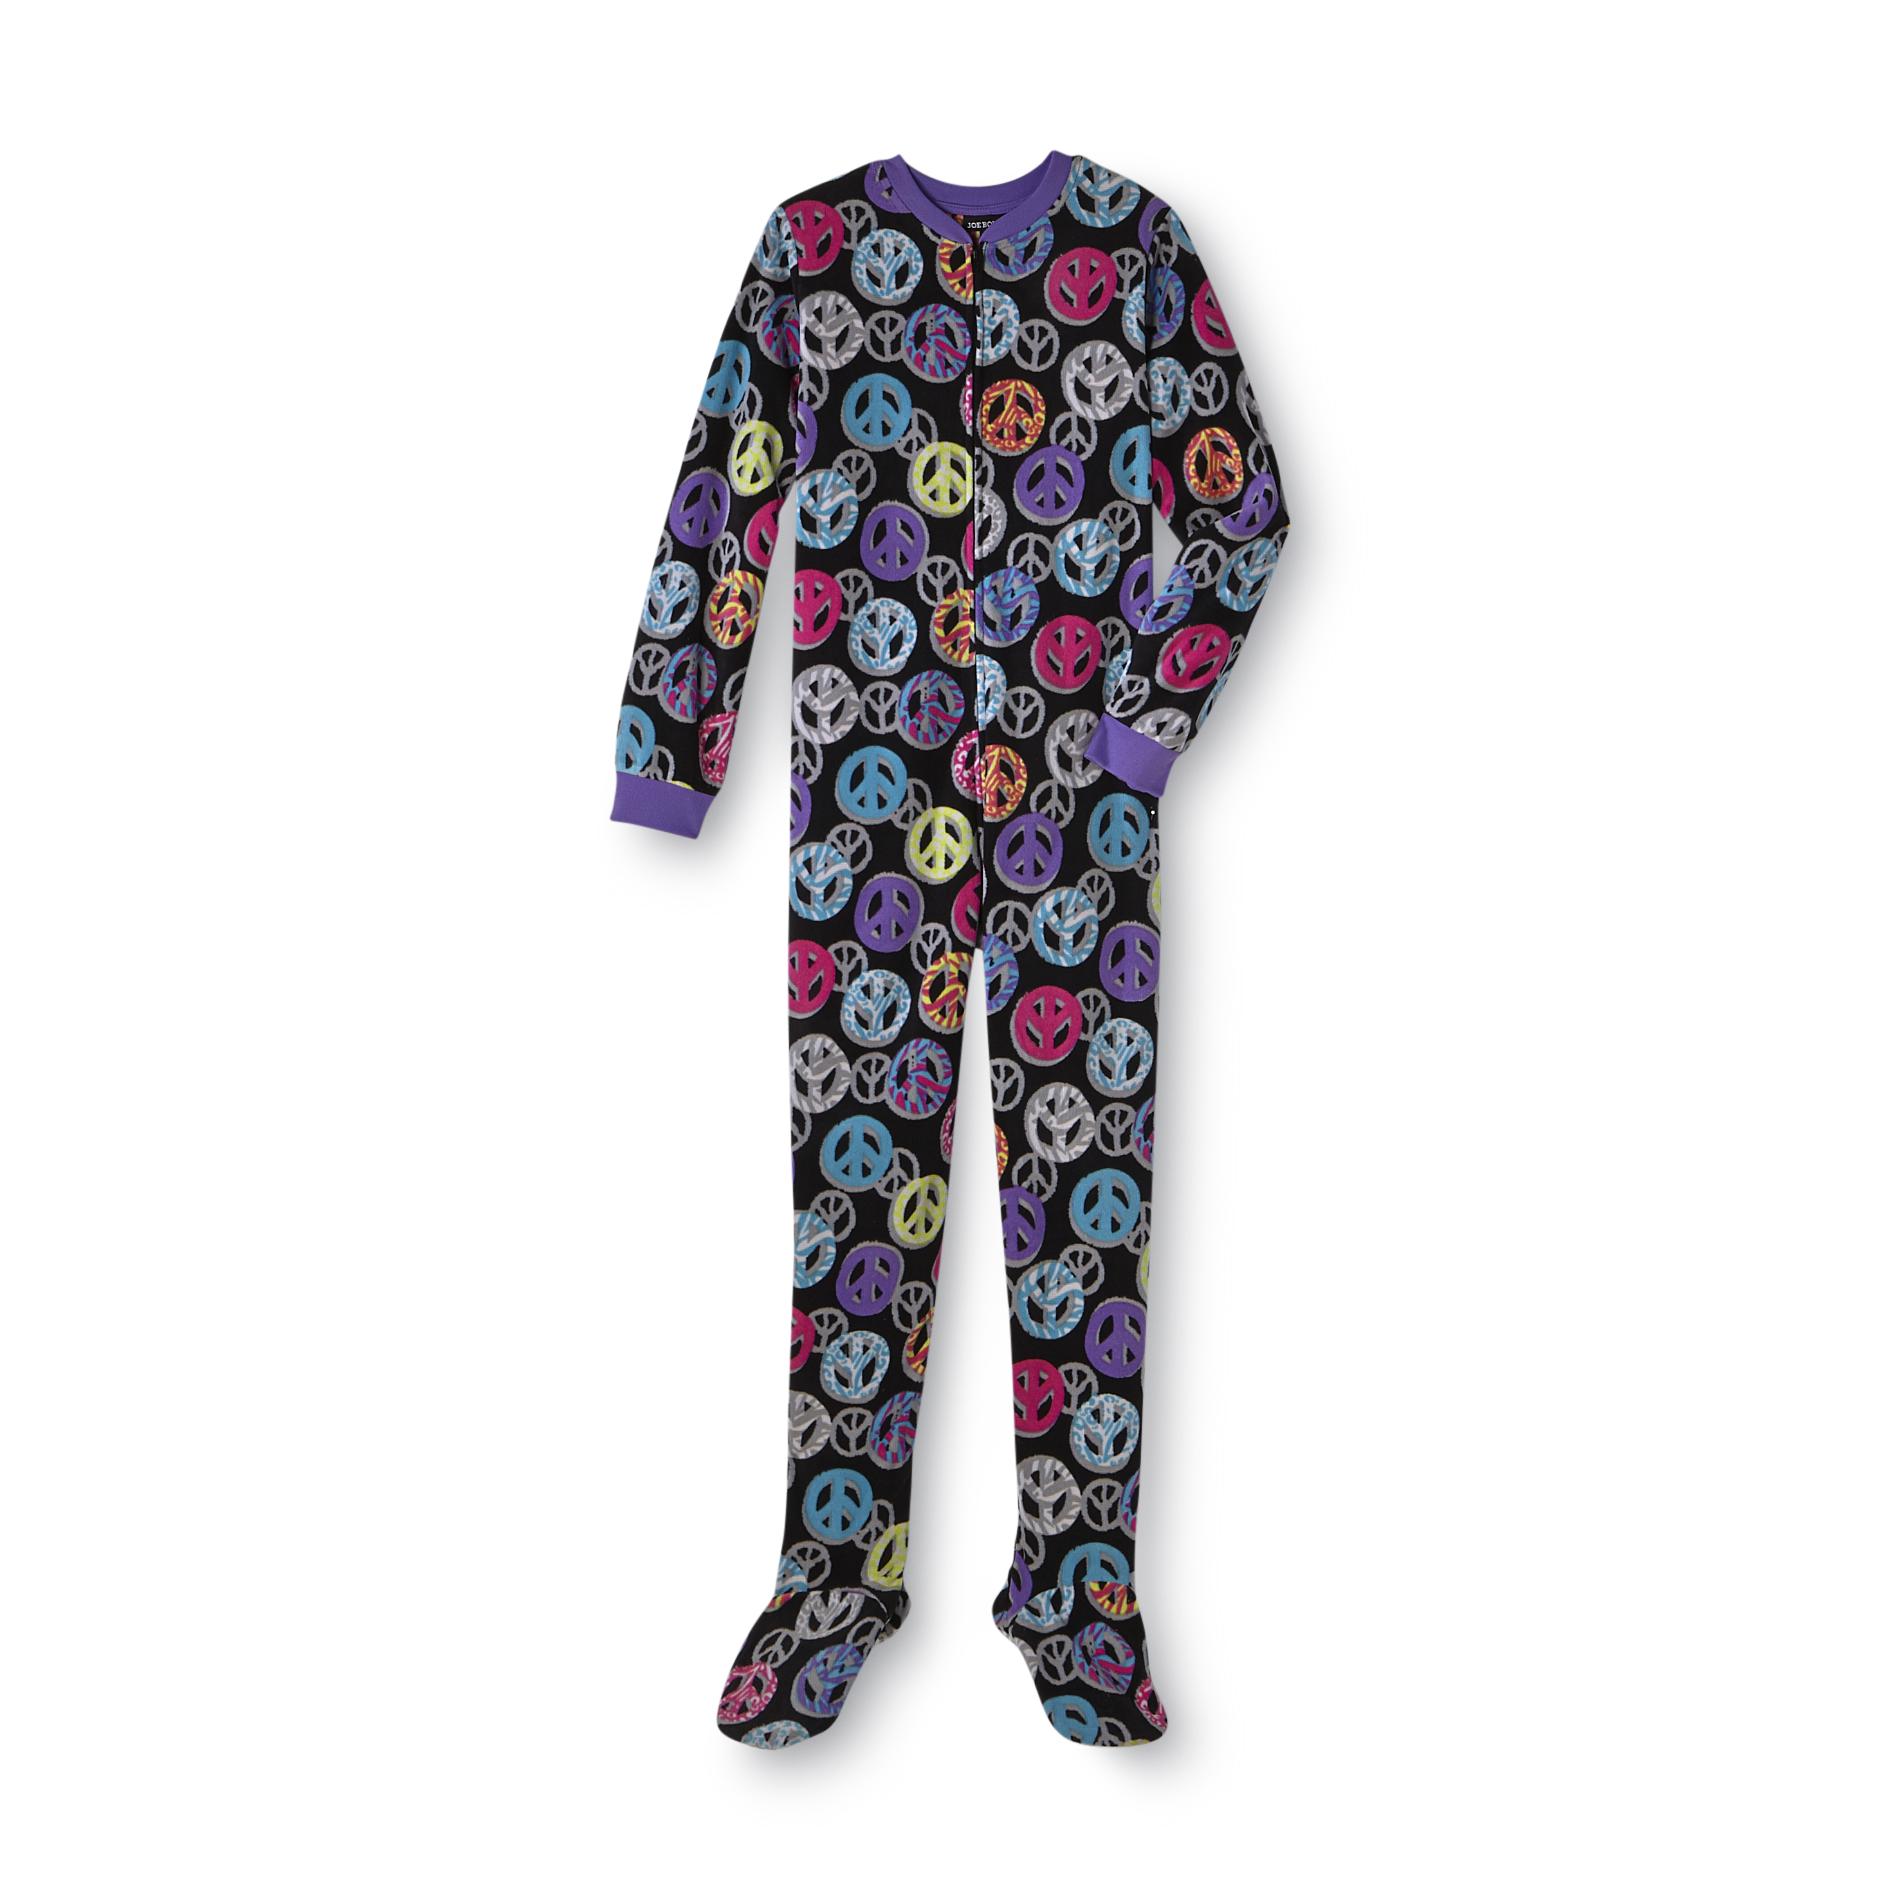 Joe Boxer Girl's Plush Footed Pajamas - Peace Signs